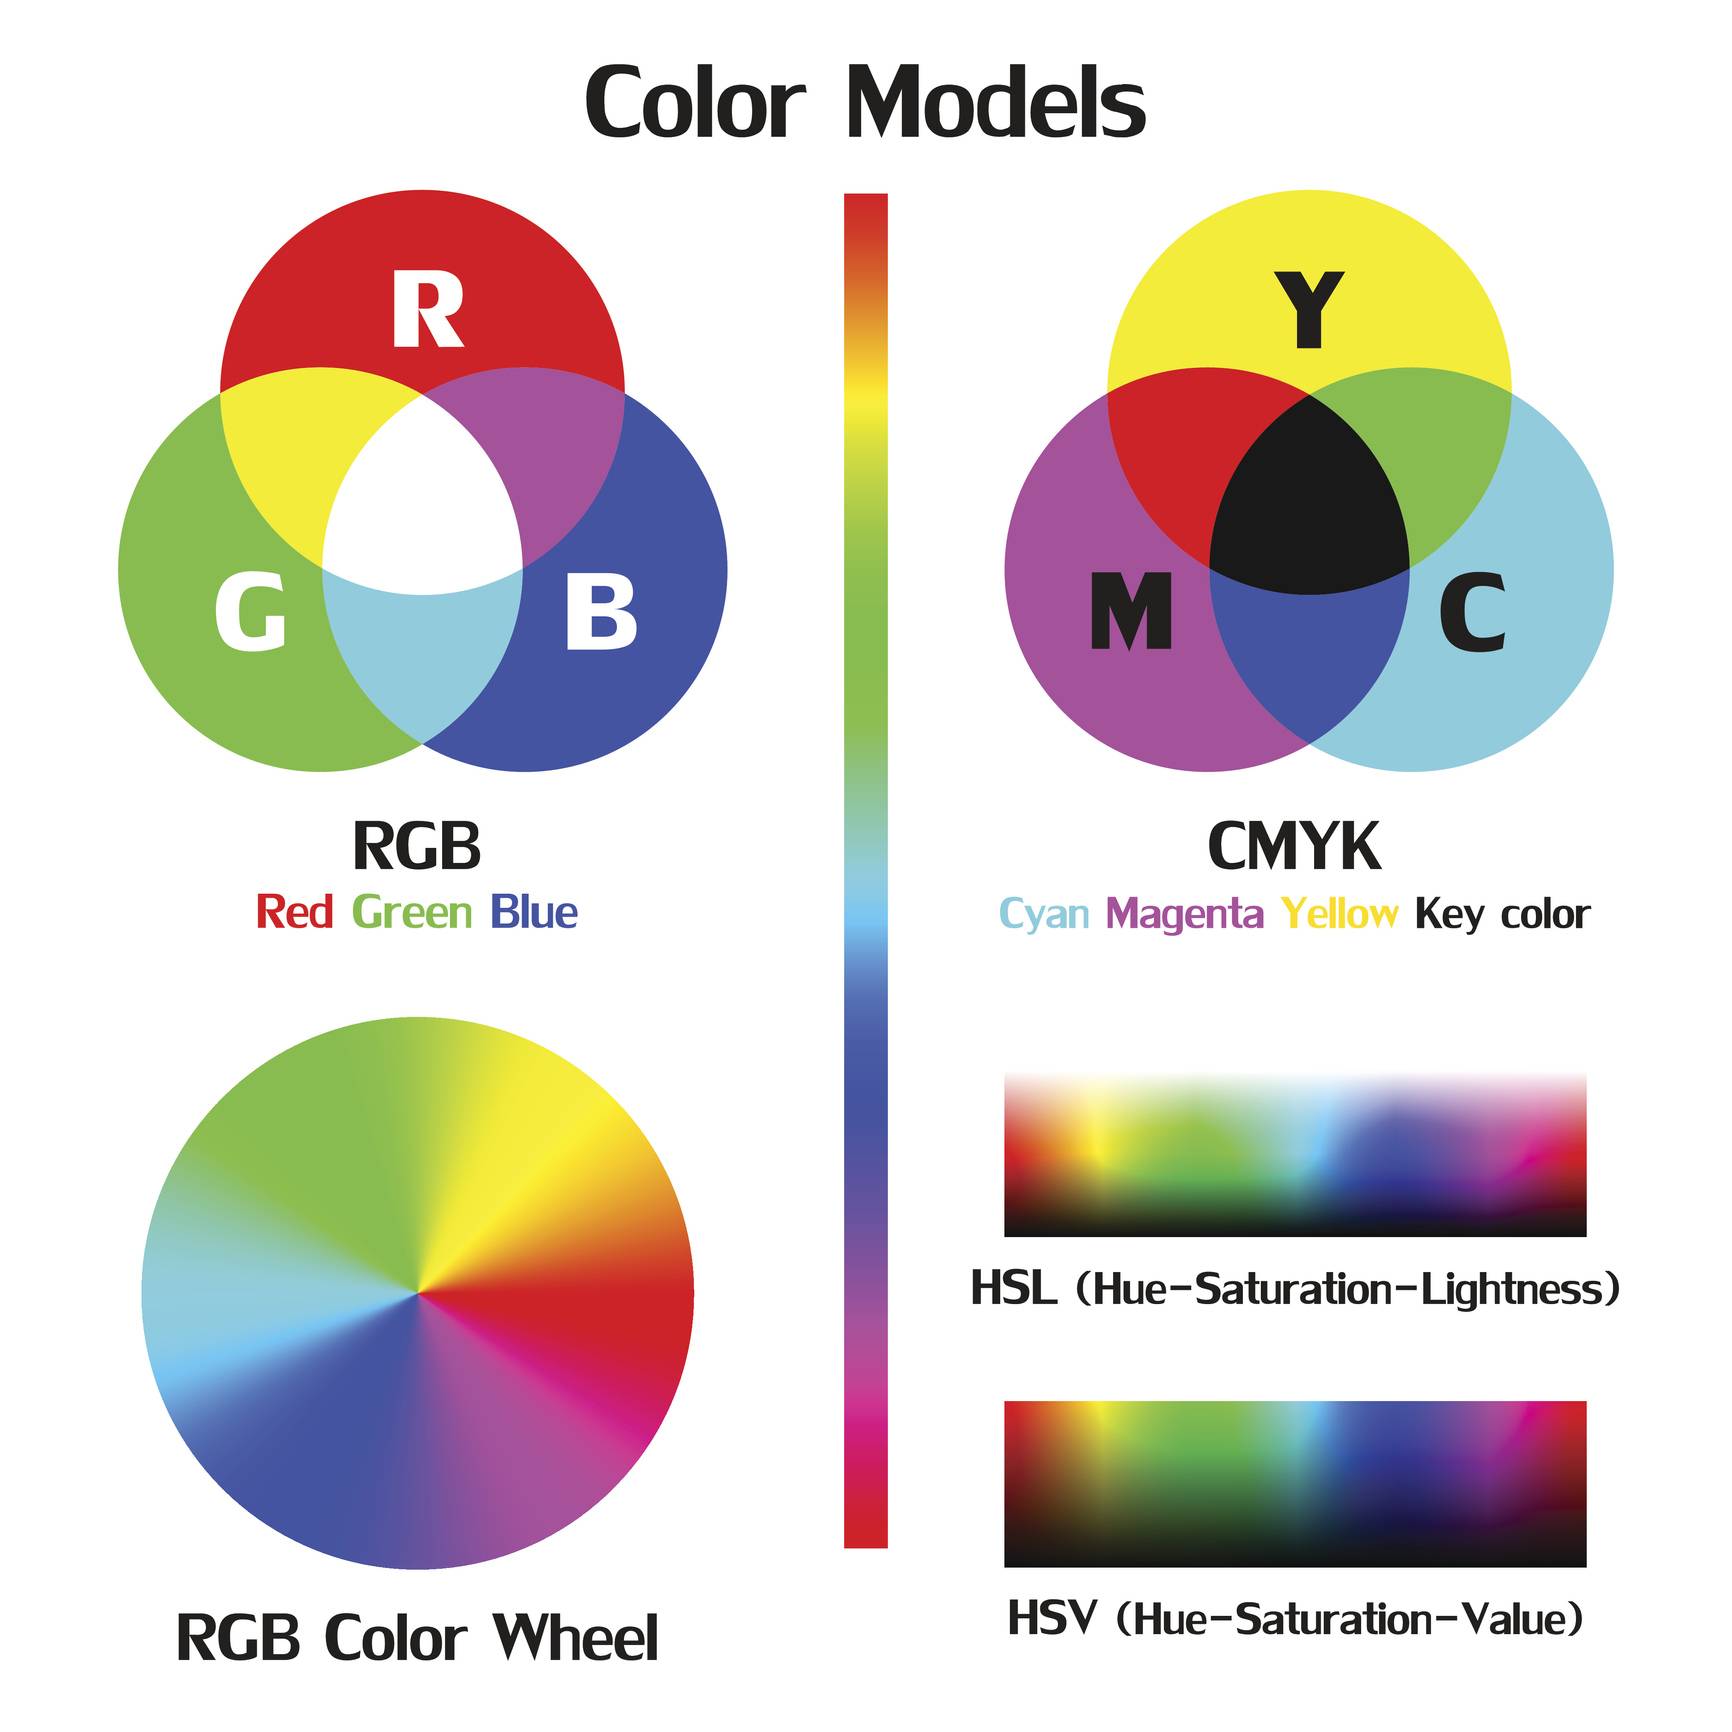 Image of color models